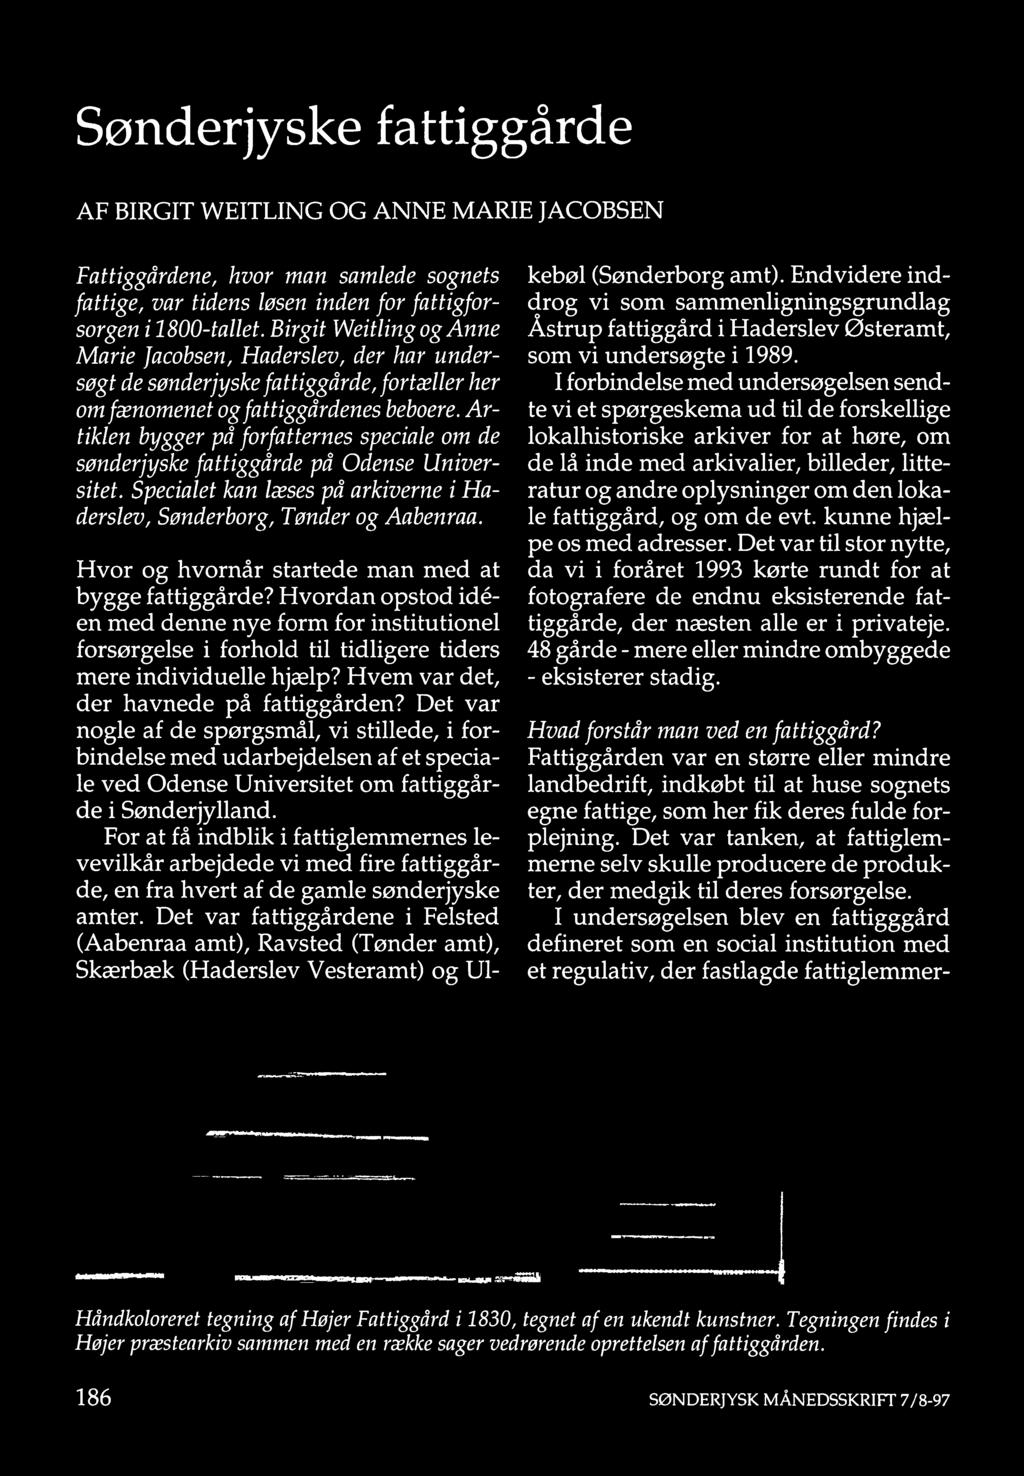 Artiklen bygger på forfatternes speciale om de sønderjyske fattiggårde på Odense Universitet. Specialet kan læses på arkiverne i Haderslev, Sønderborg, Tønder og Aabenraa.